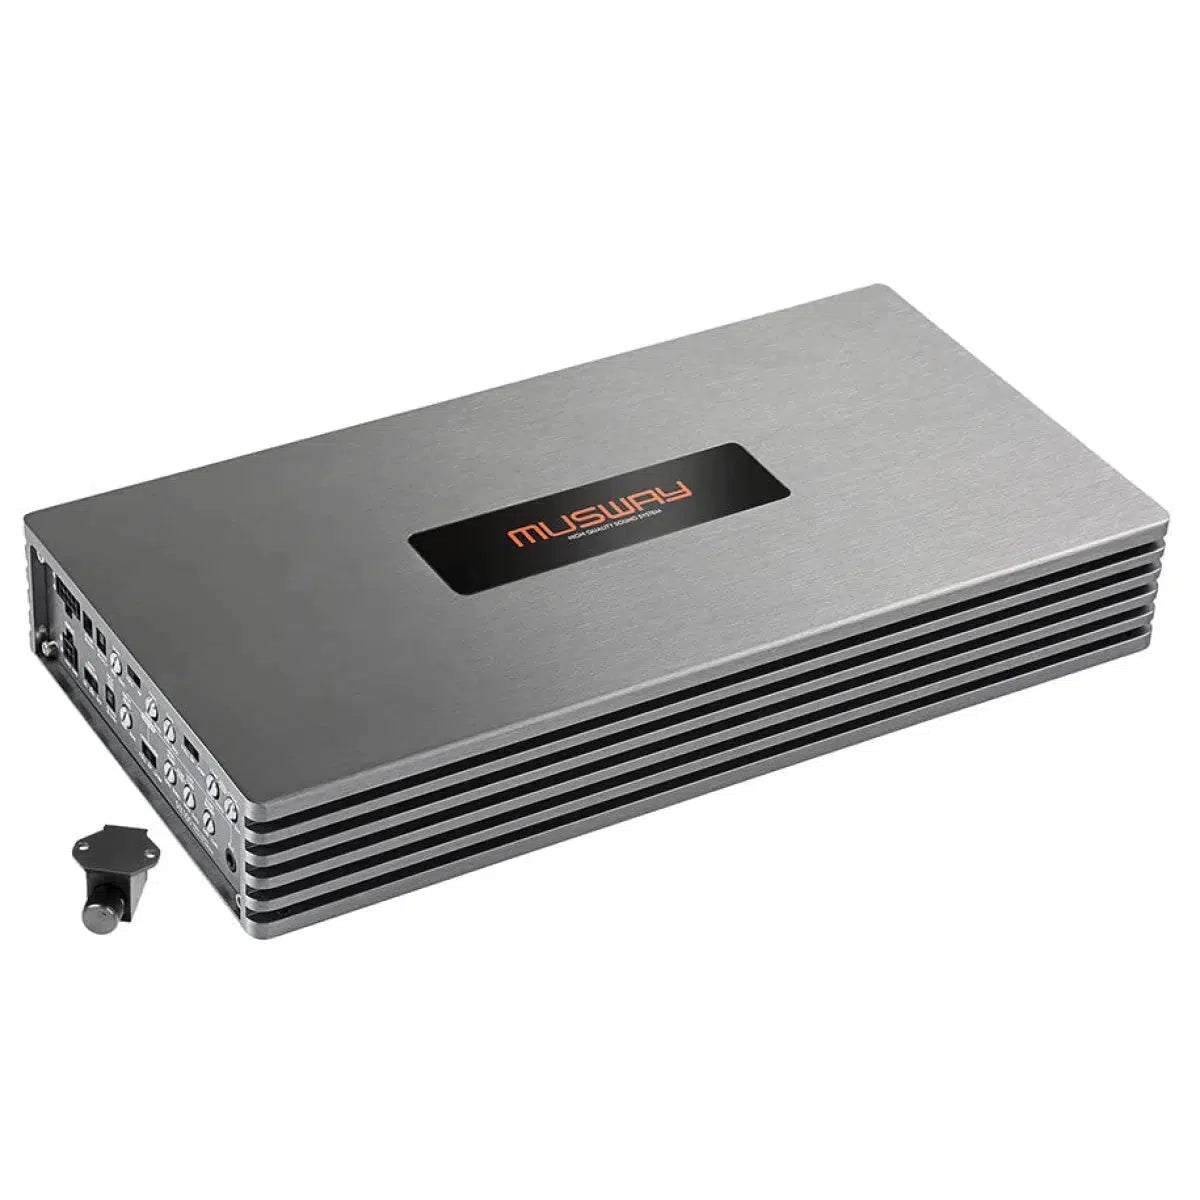 Musway-SIX100-Amplificador de 6 canales-Masori.de